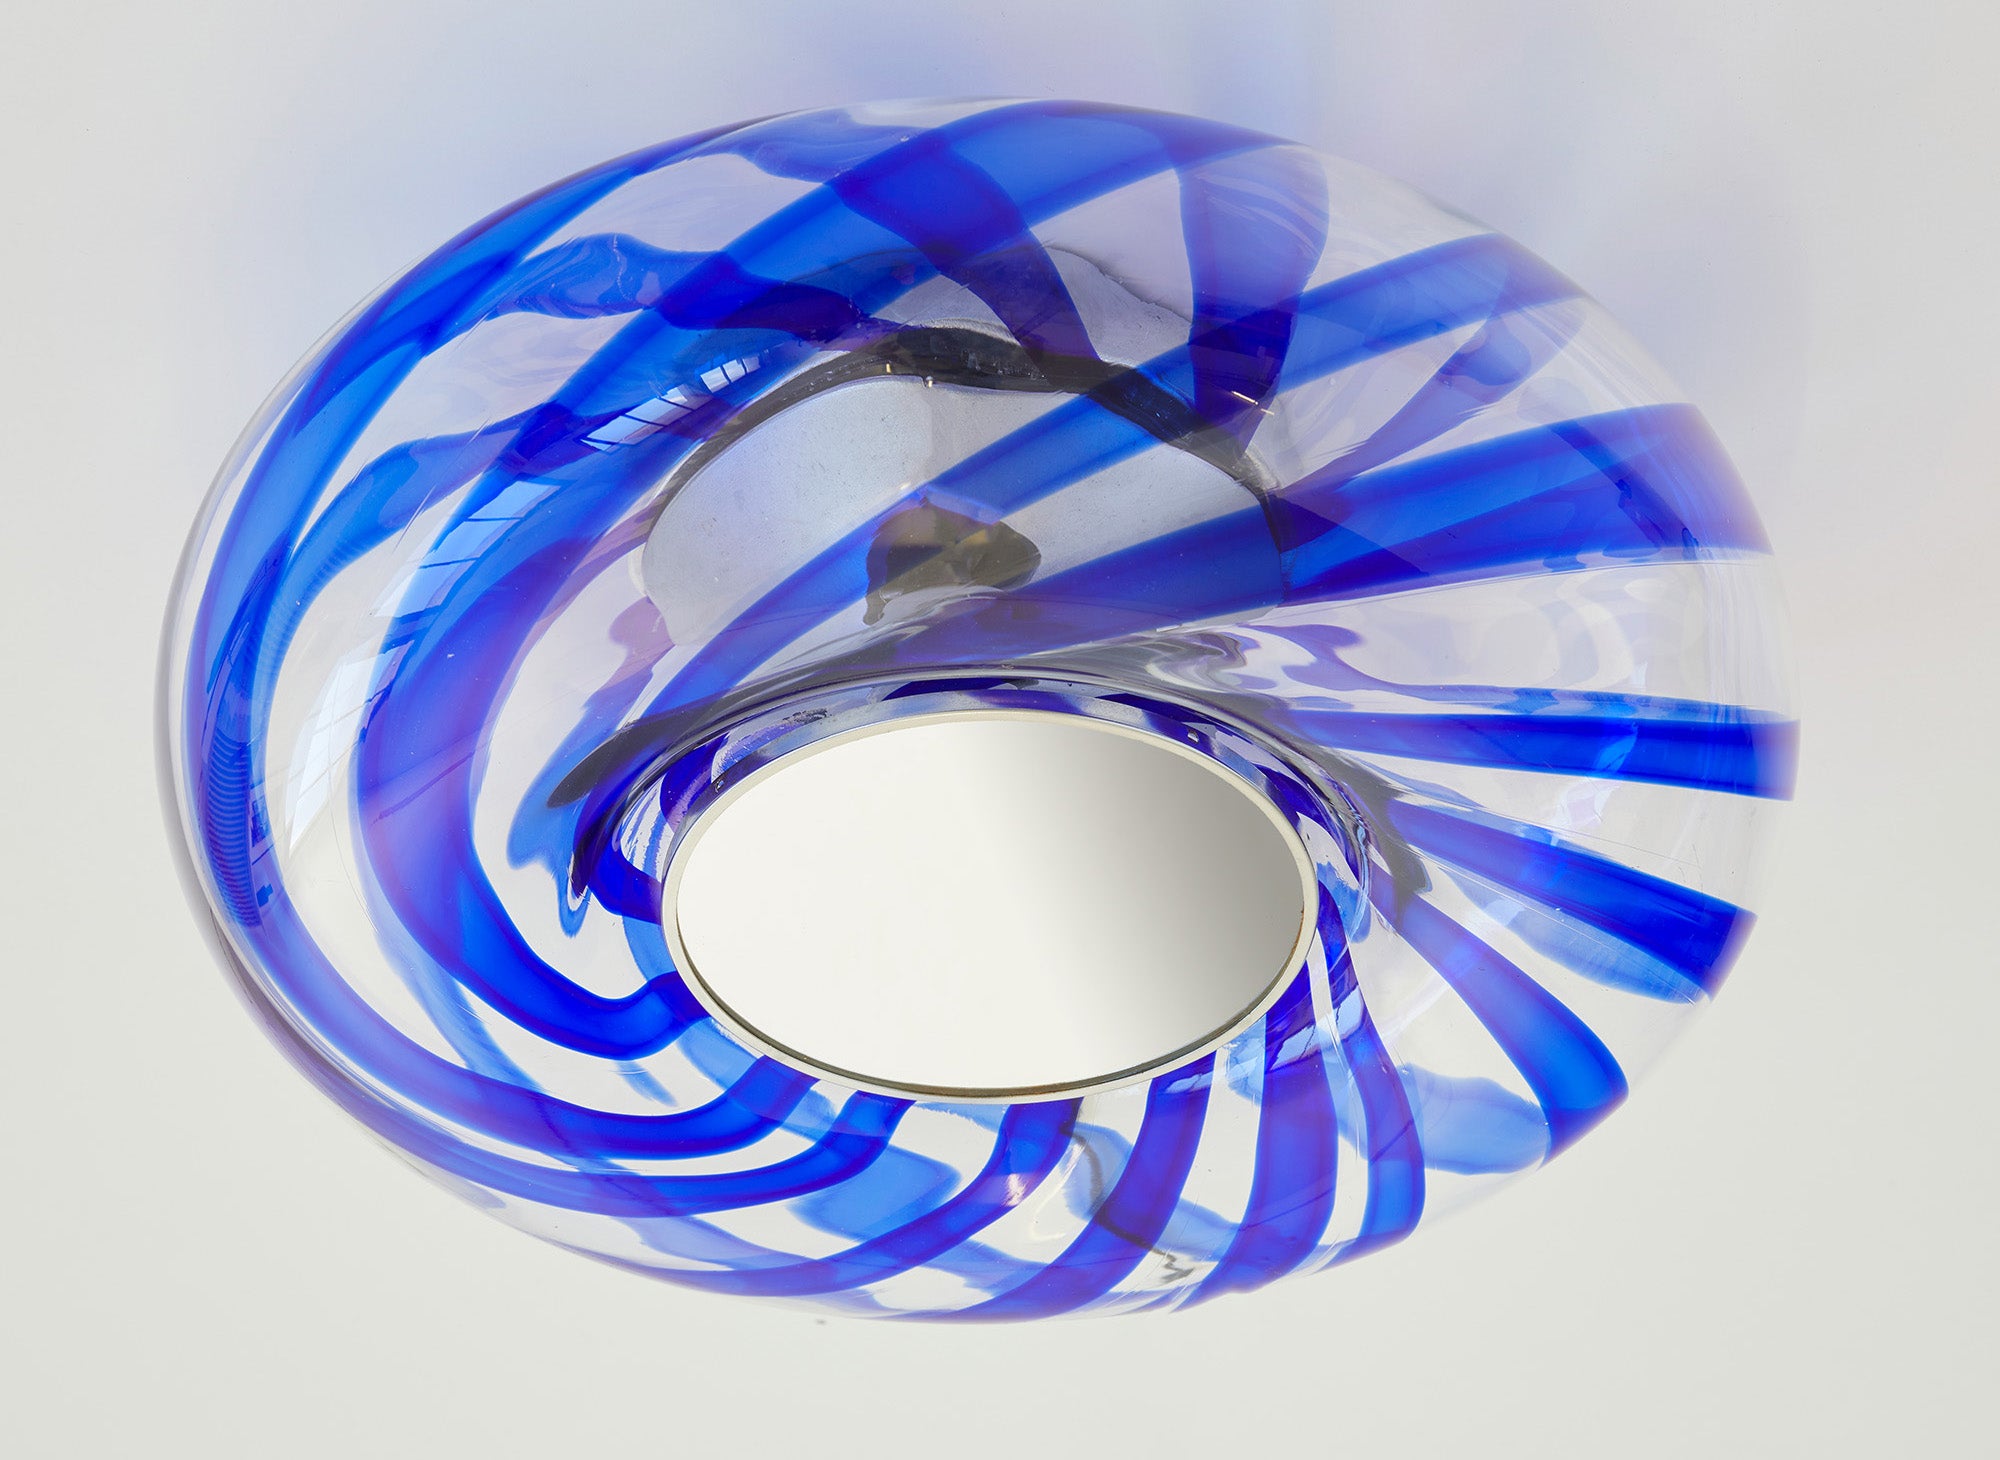 Magnifique encastré avec un grand diffuseur circulaire en verre de Murano soufflé à la main, dont le verre présente de magnifiques tourbillons d'un bleu profond.

À l'intérieur de l'abat-jour en verre, la lampe présente une pièce centrale conique en